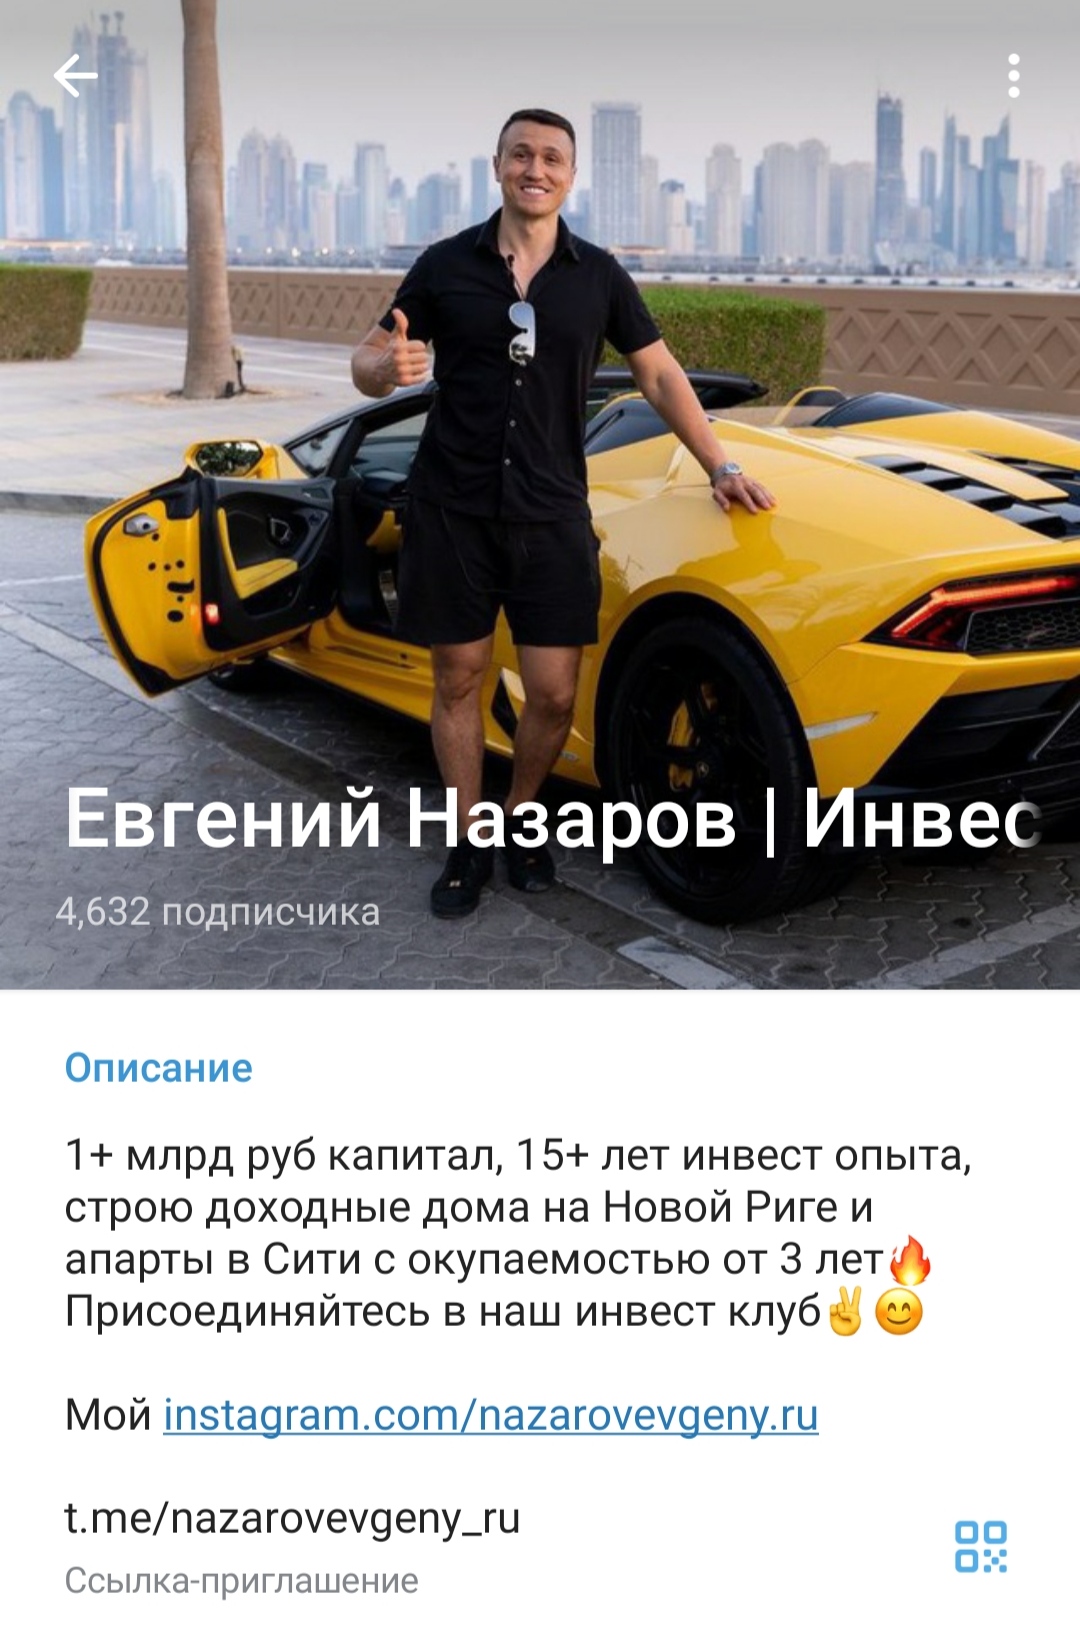 Евгений Назаров - инвестор и миллионер